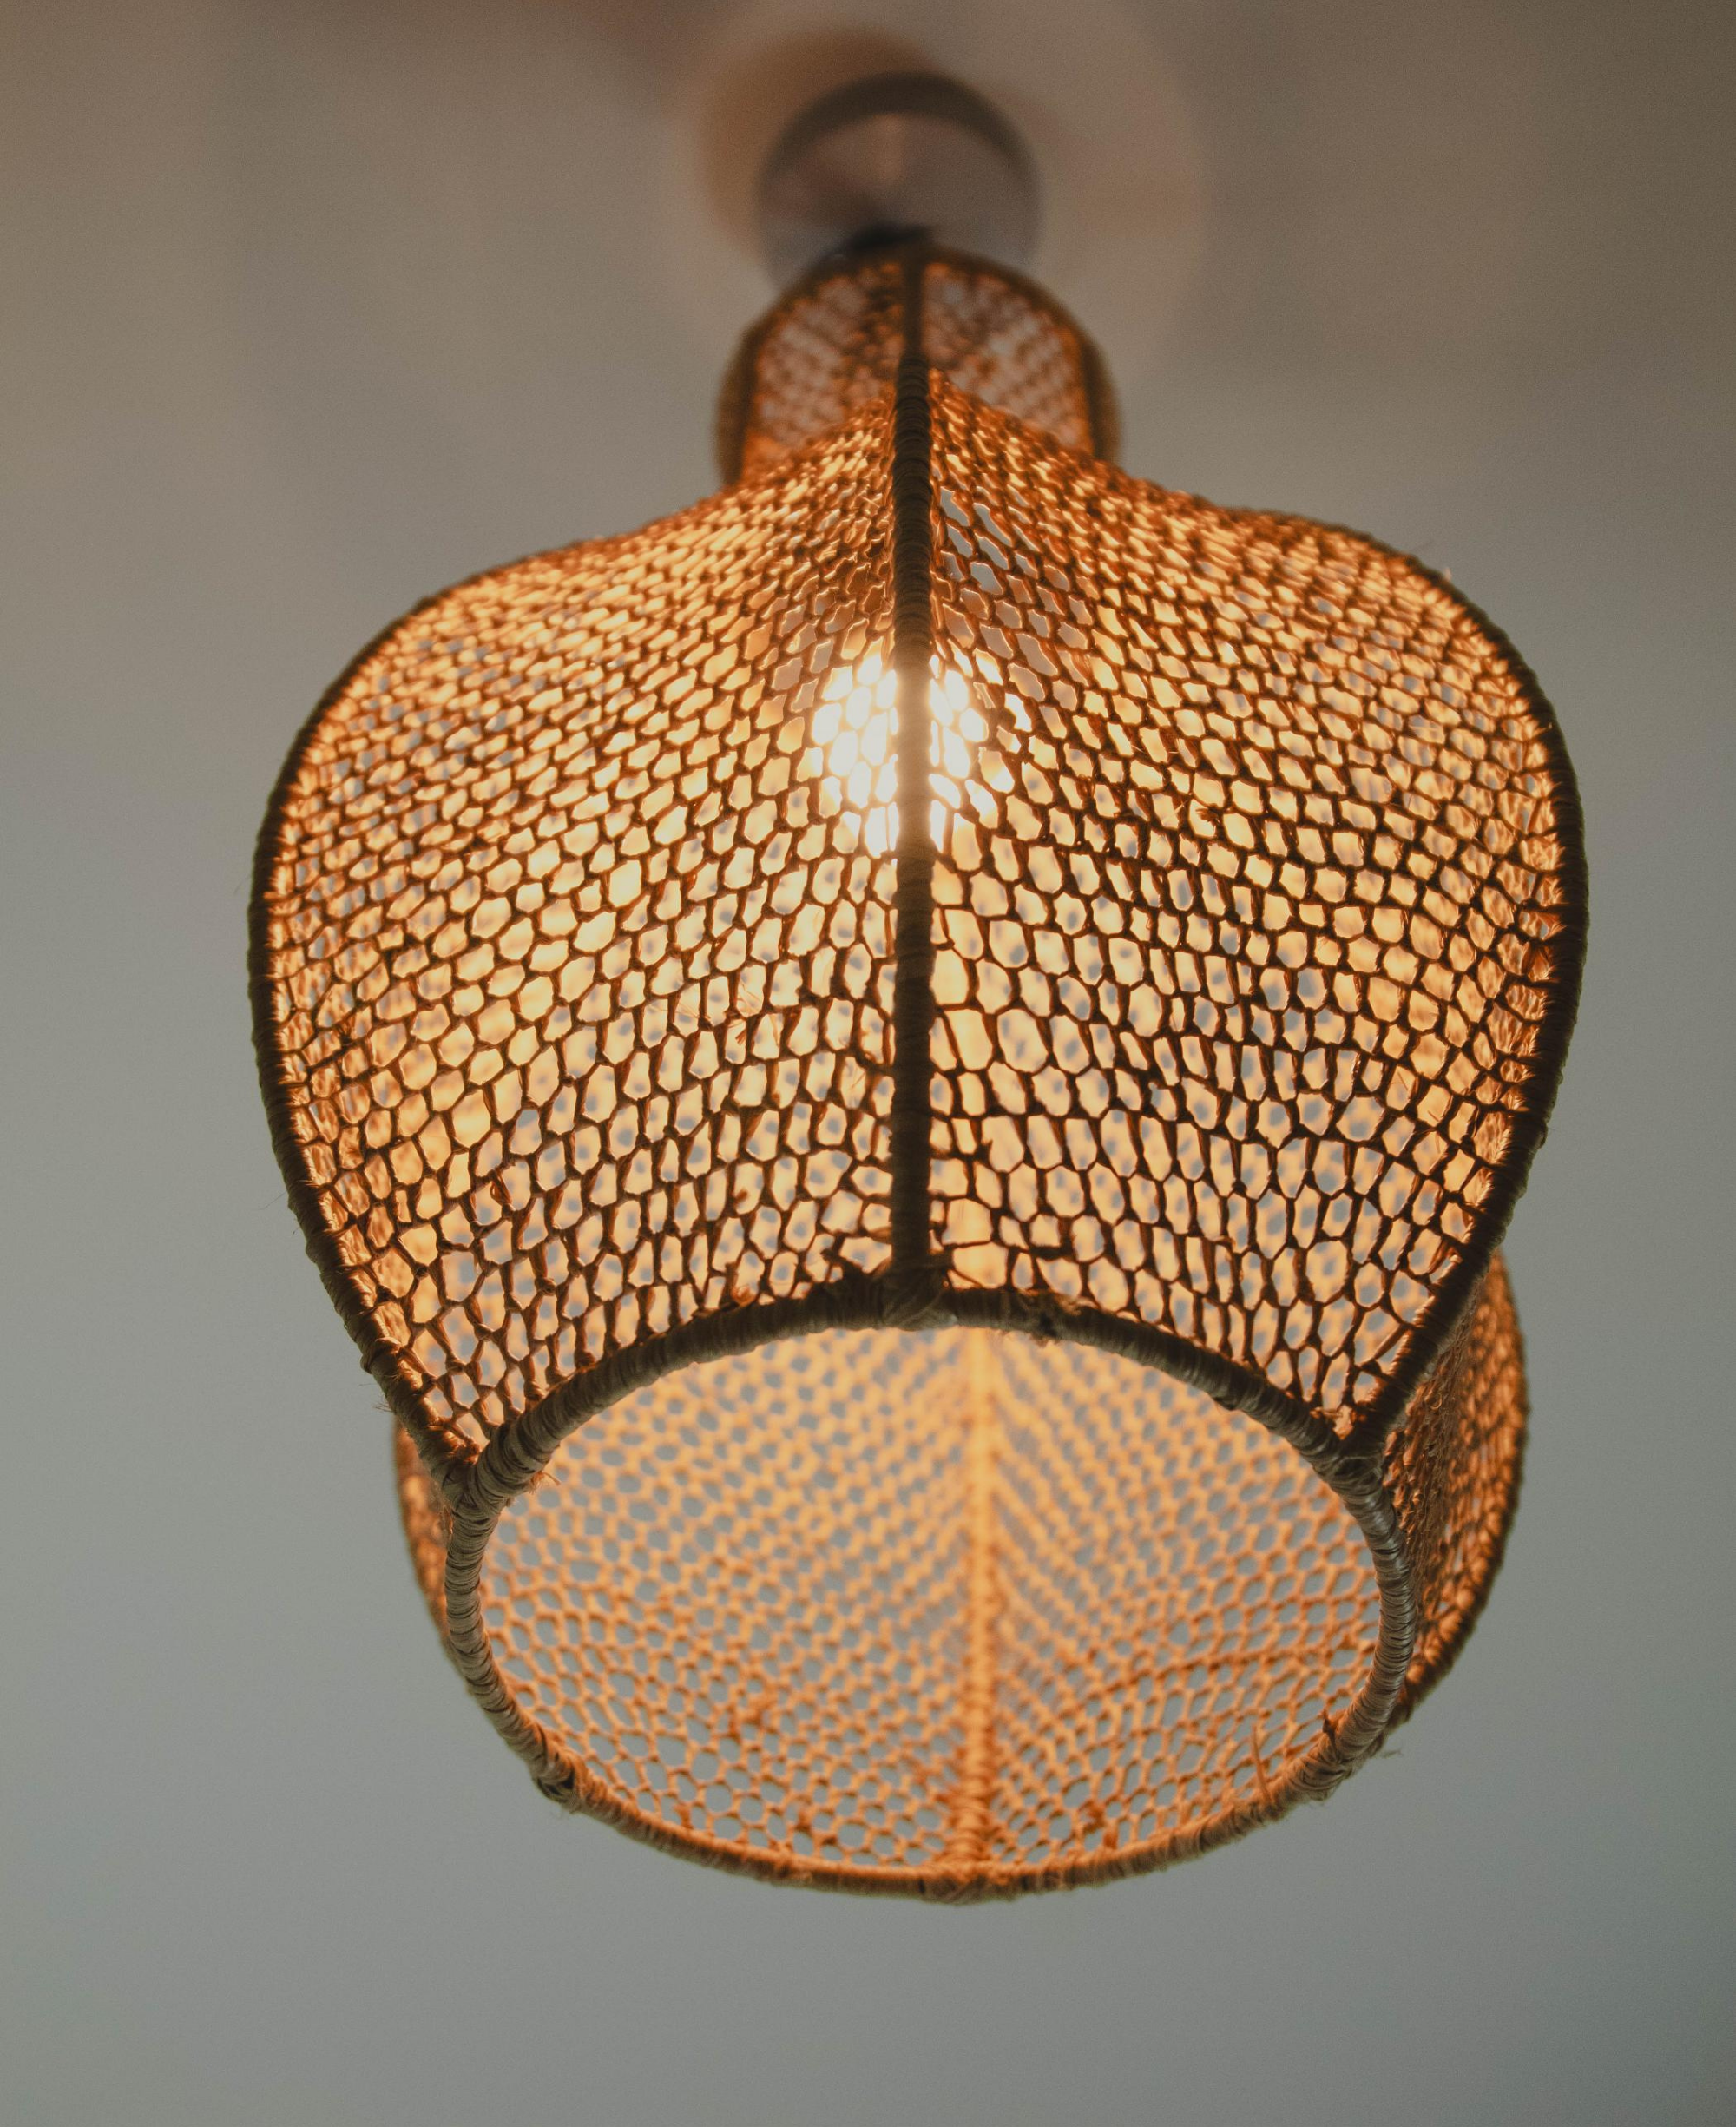 Raffia Light Suspension Lampshade - Boho Exquisite Raffia Pendant Light